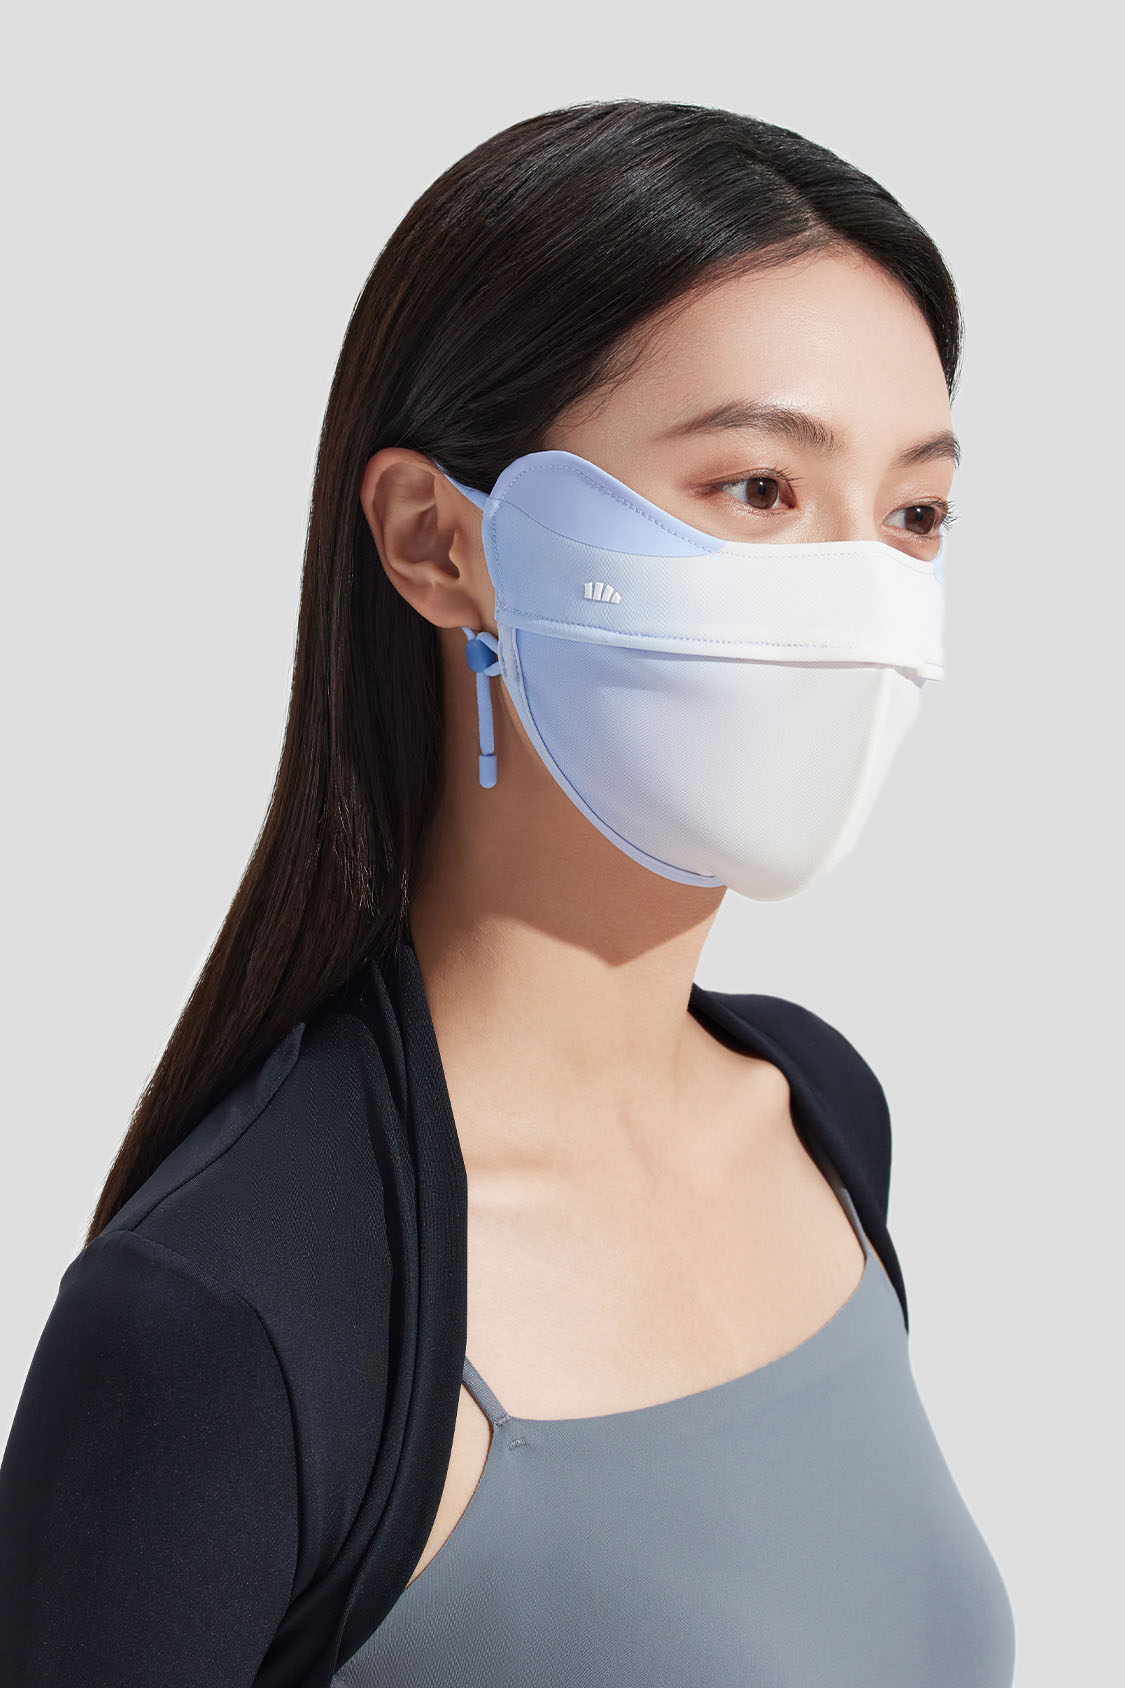 UV Protection Face Mask, Beneunder Face Cover Upf 50+ for Women